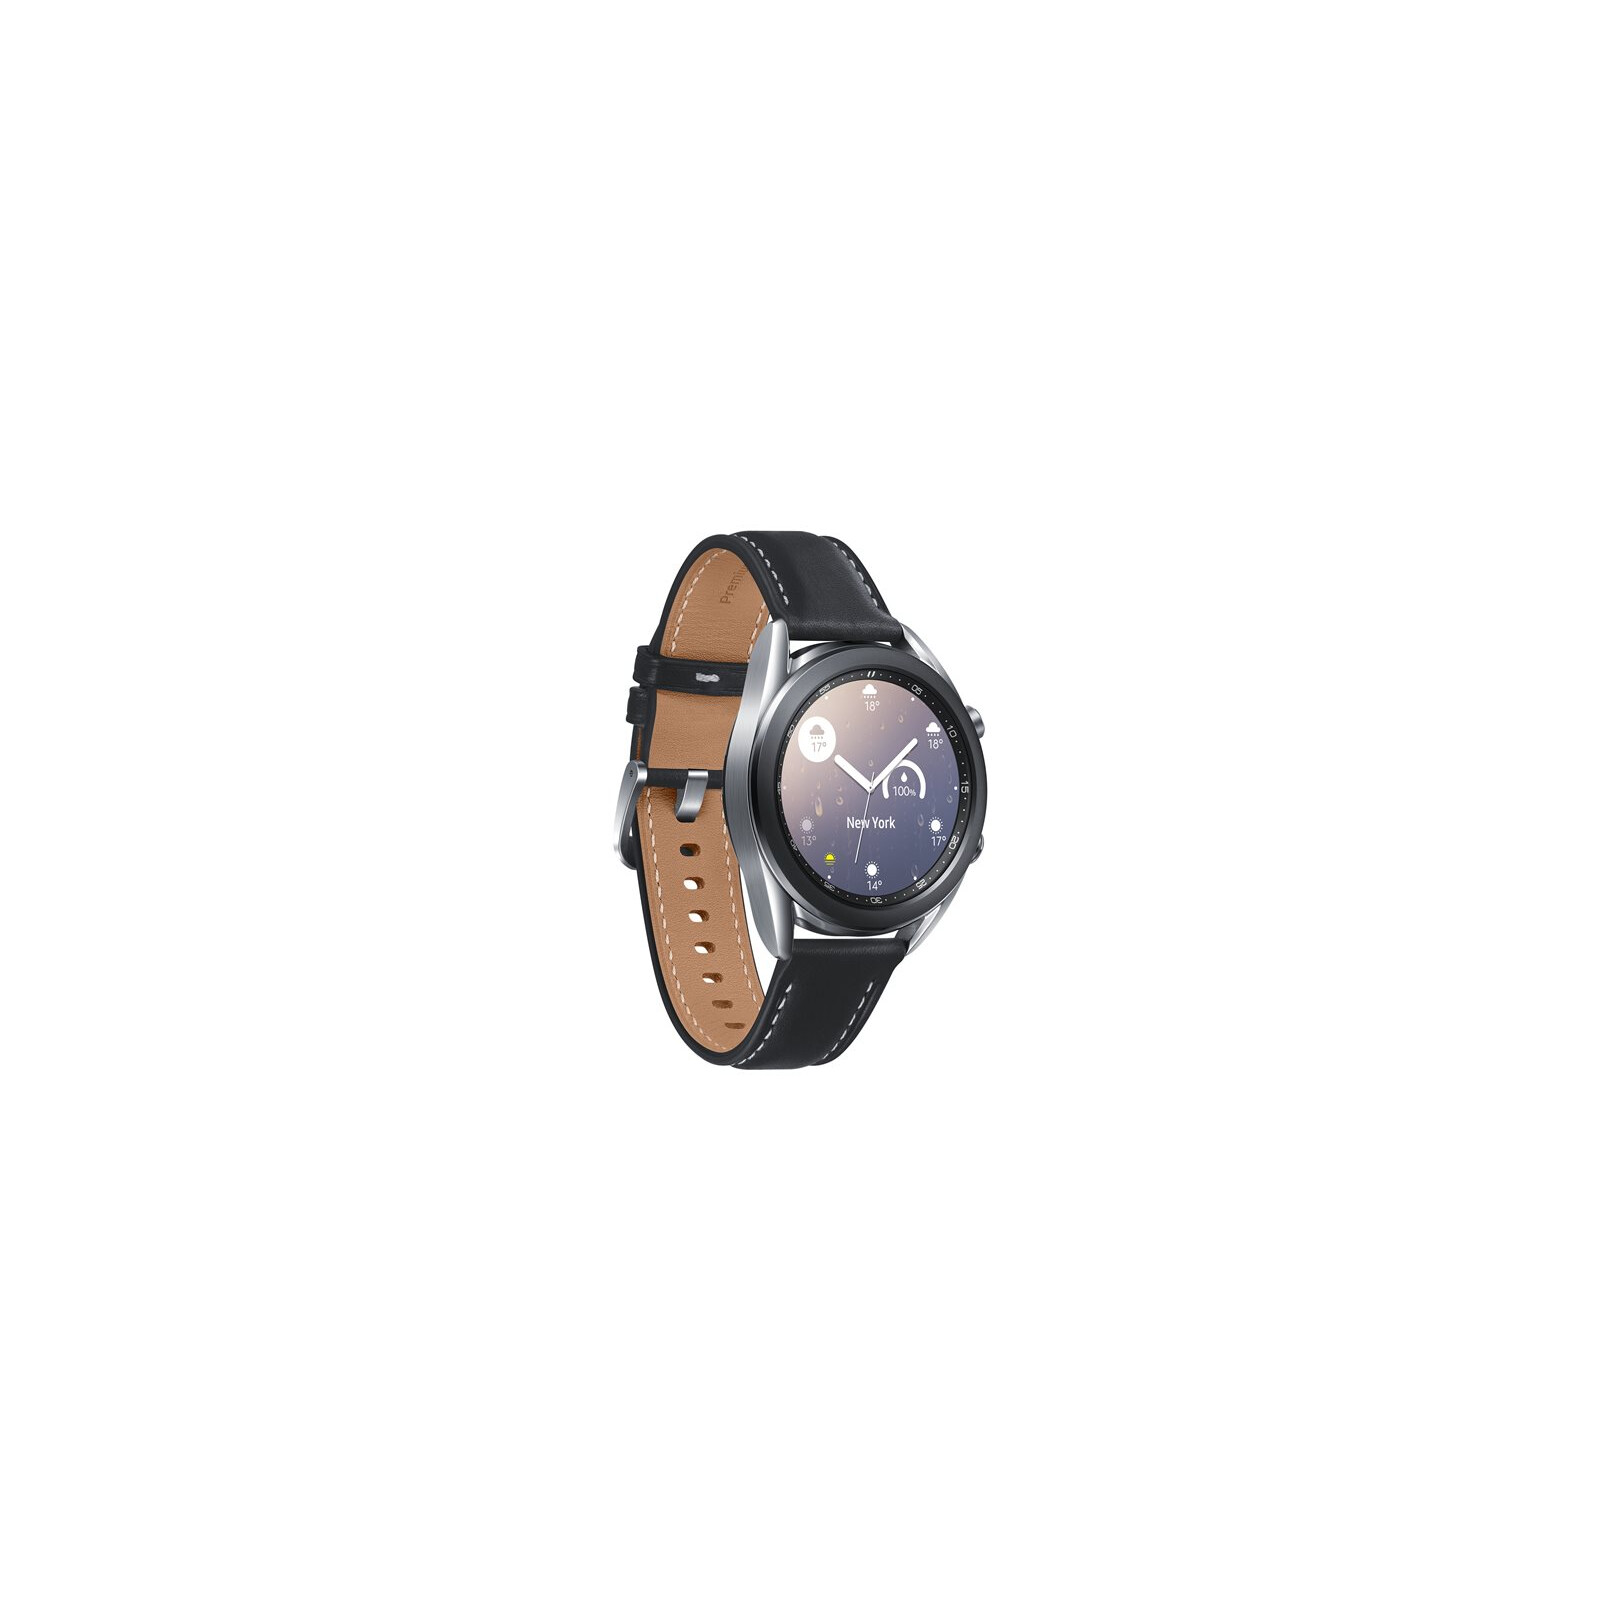 Samsung Galaxy Watch 3 41mm Mystic Silver